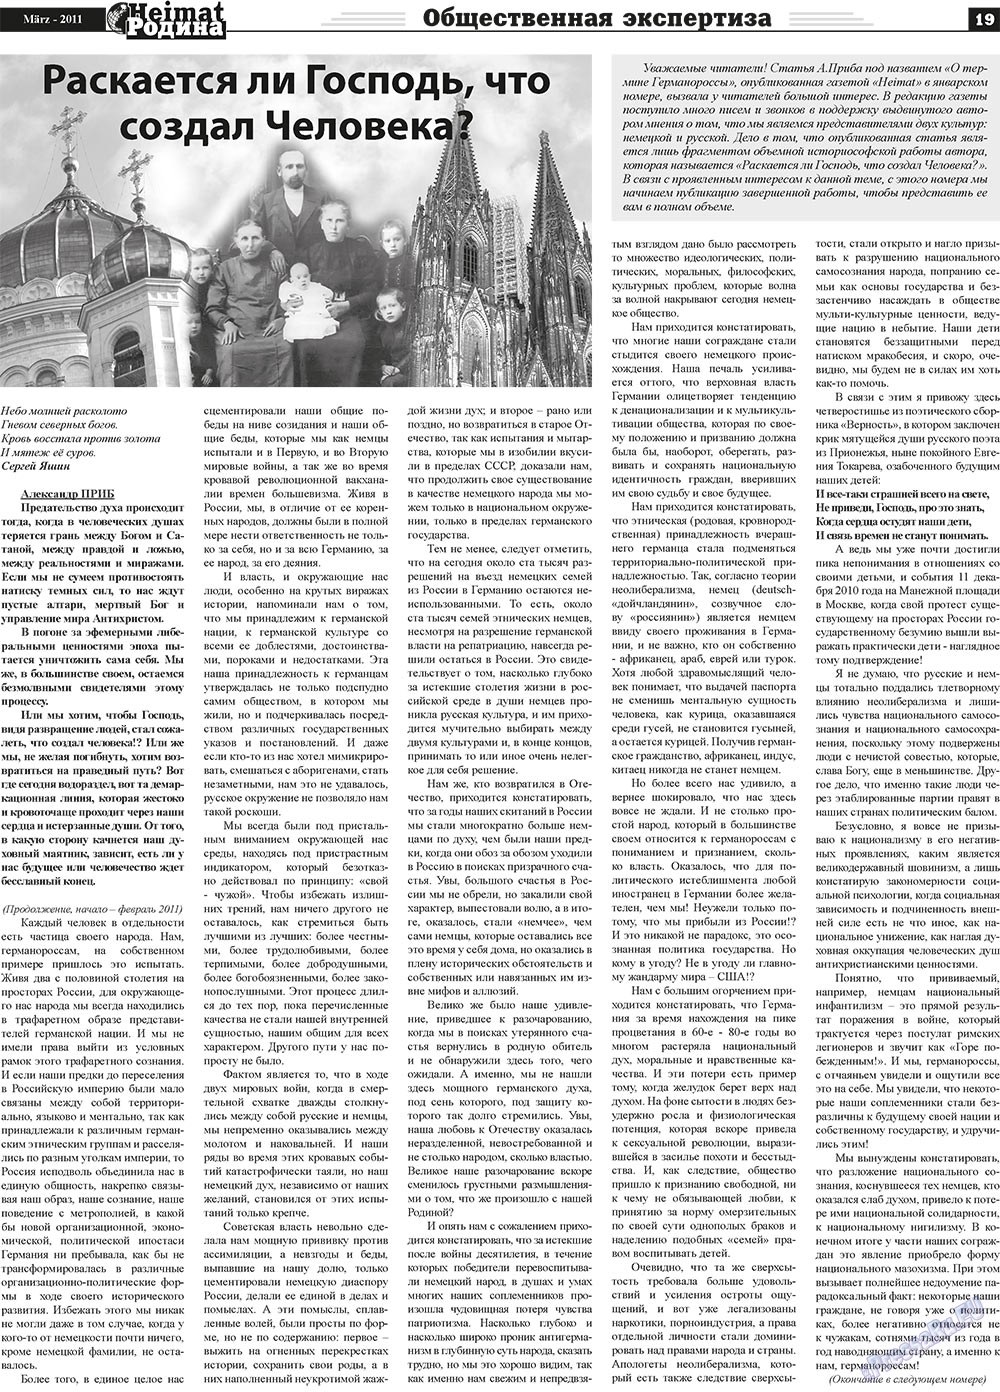 Heimat-Родина (газета). 2011 год, номер 3, стр. 19